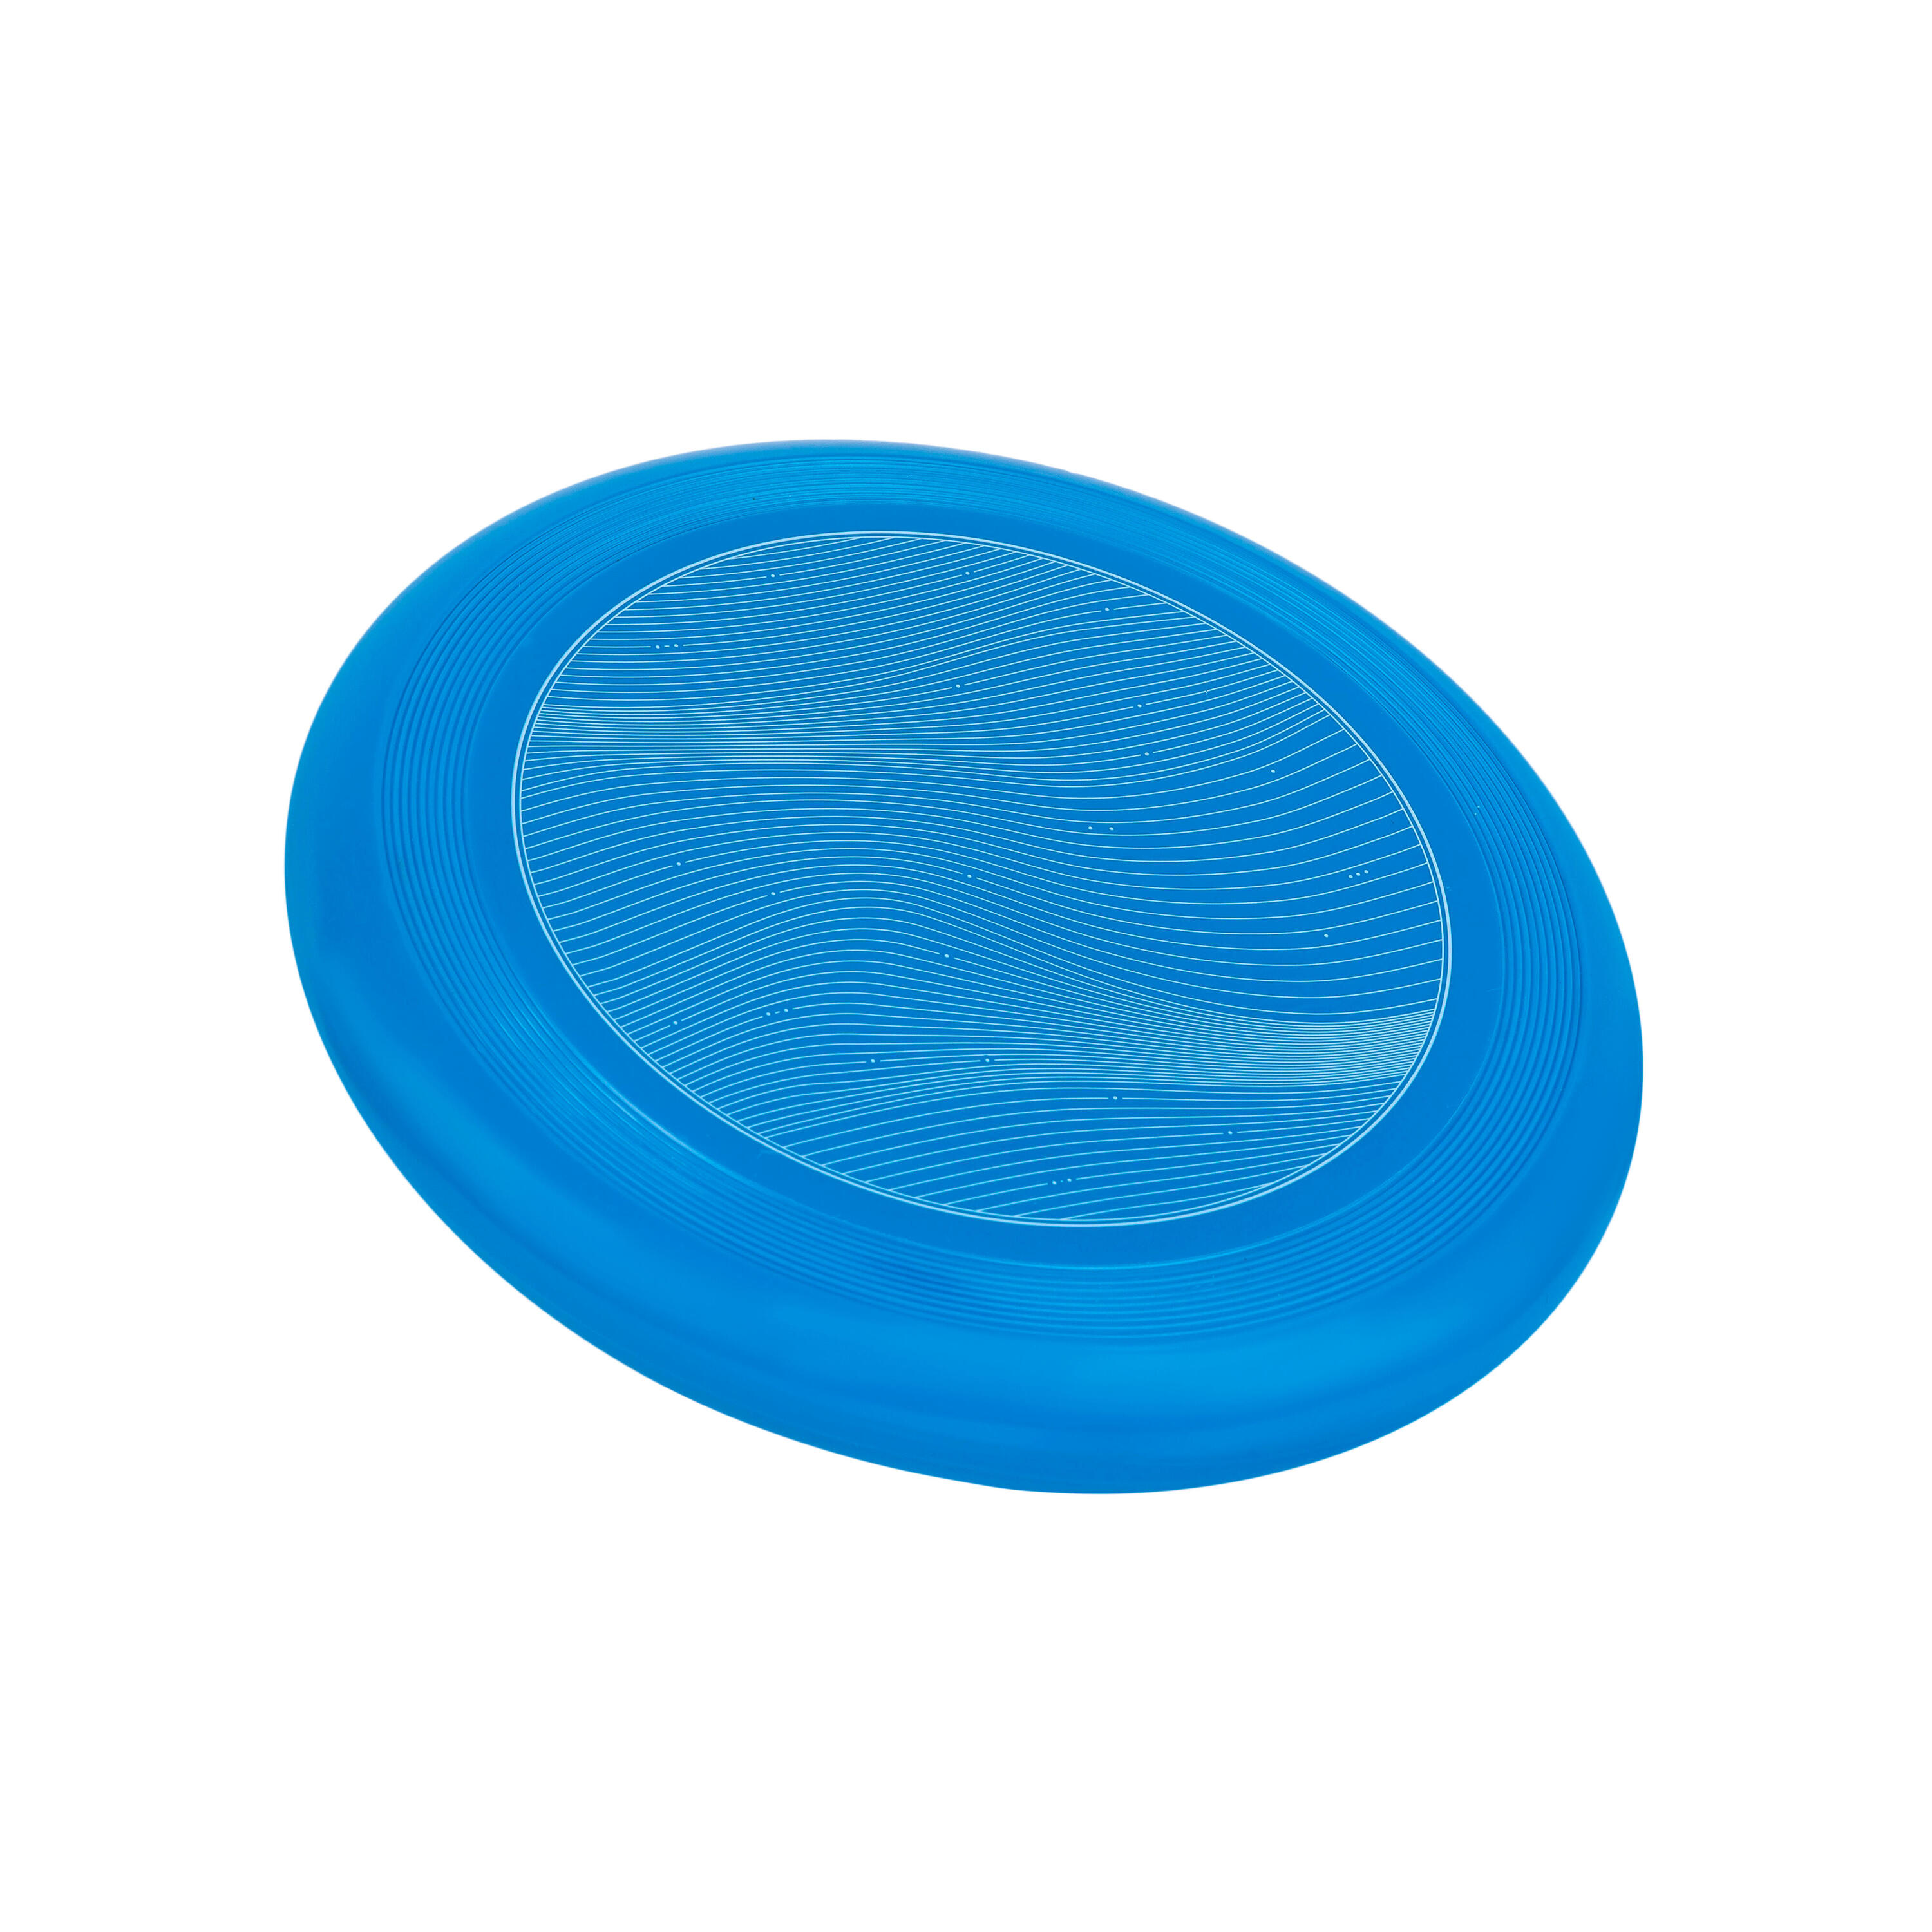 Adult Soft Flying Disc - Unda Blue. 2/6